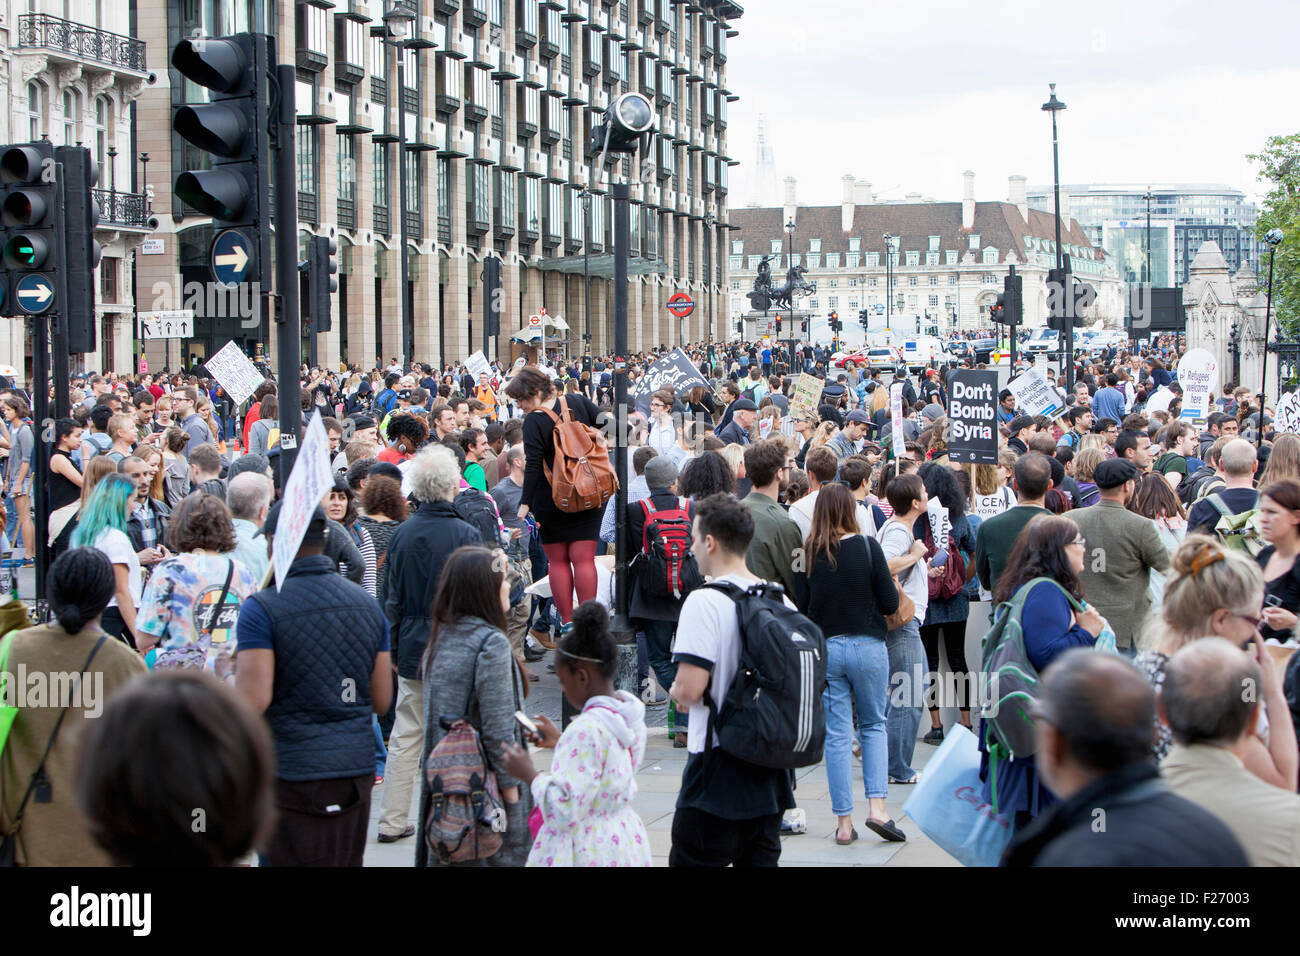 "Flüchtlinge sind hier herzlich willkommen" Solidarität Demonstration, sie tauchten in die Zehntausende, die Demonstranten fangen an, am Ende der Rallye in London, Parliament Square, zerstreuen 09.12.2015 Stockfoto